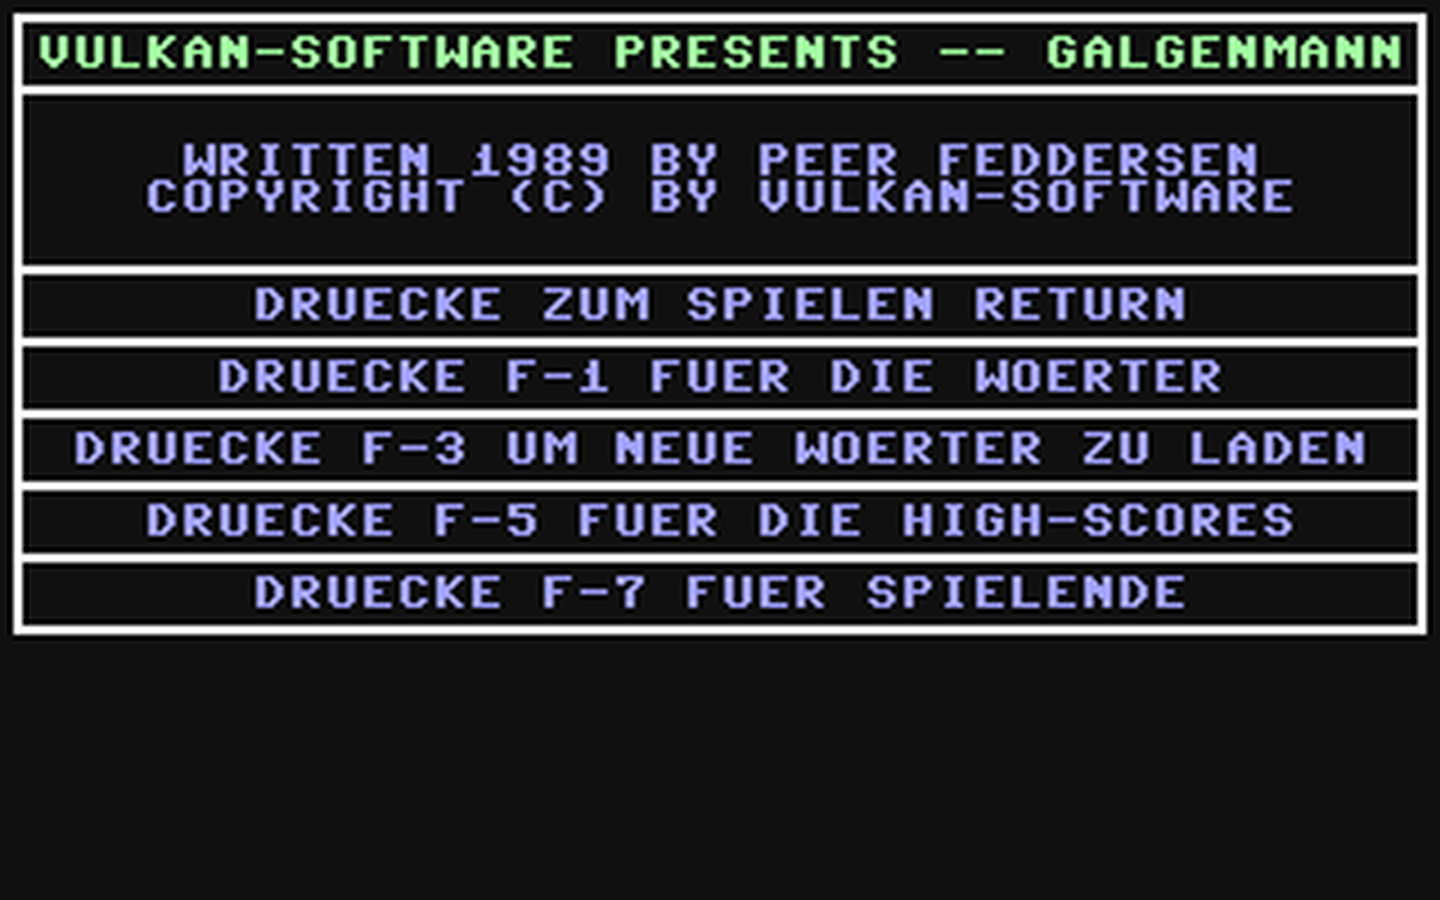 C64 GameBase Galgenmann Vulkan-Software 1989